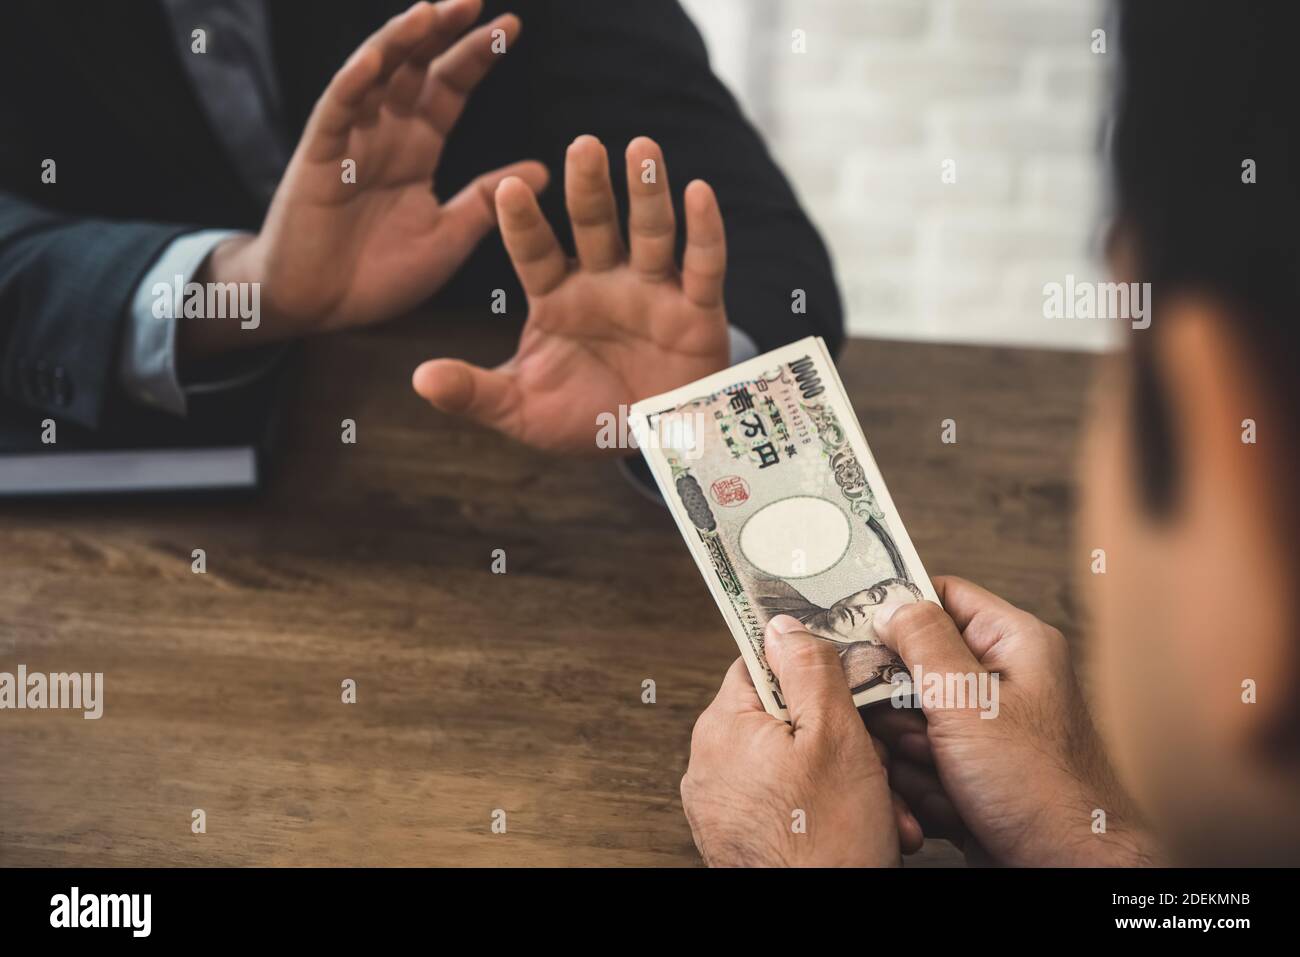 Rich Geschäftsmann bietet japanische Yen Geldscheine an die andere Person, aber er weigert sich - Anti-Birbery und Korruption Konzept Stockfoto